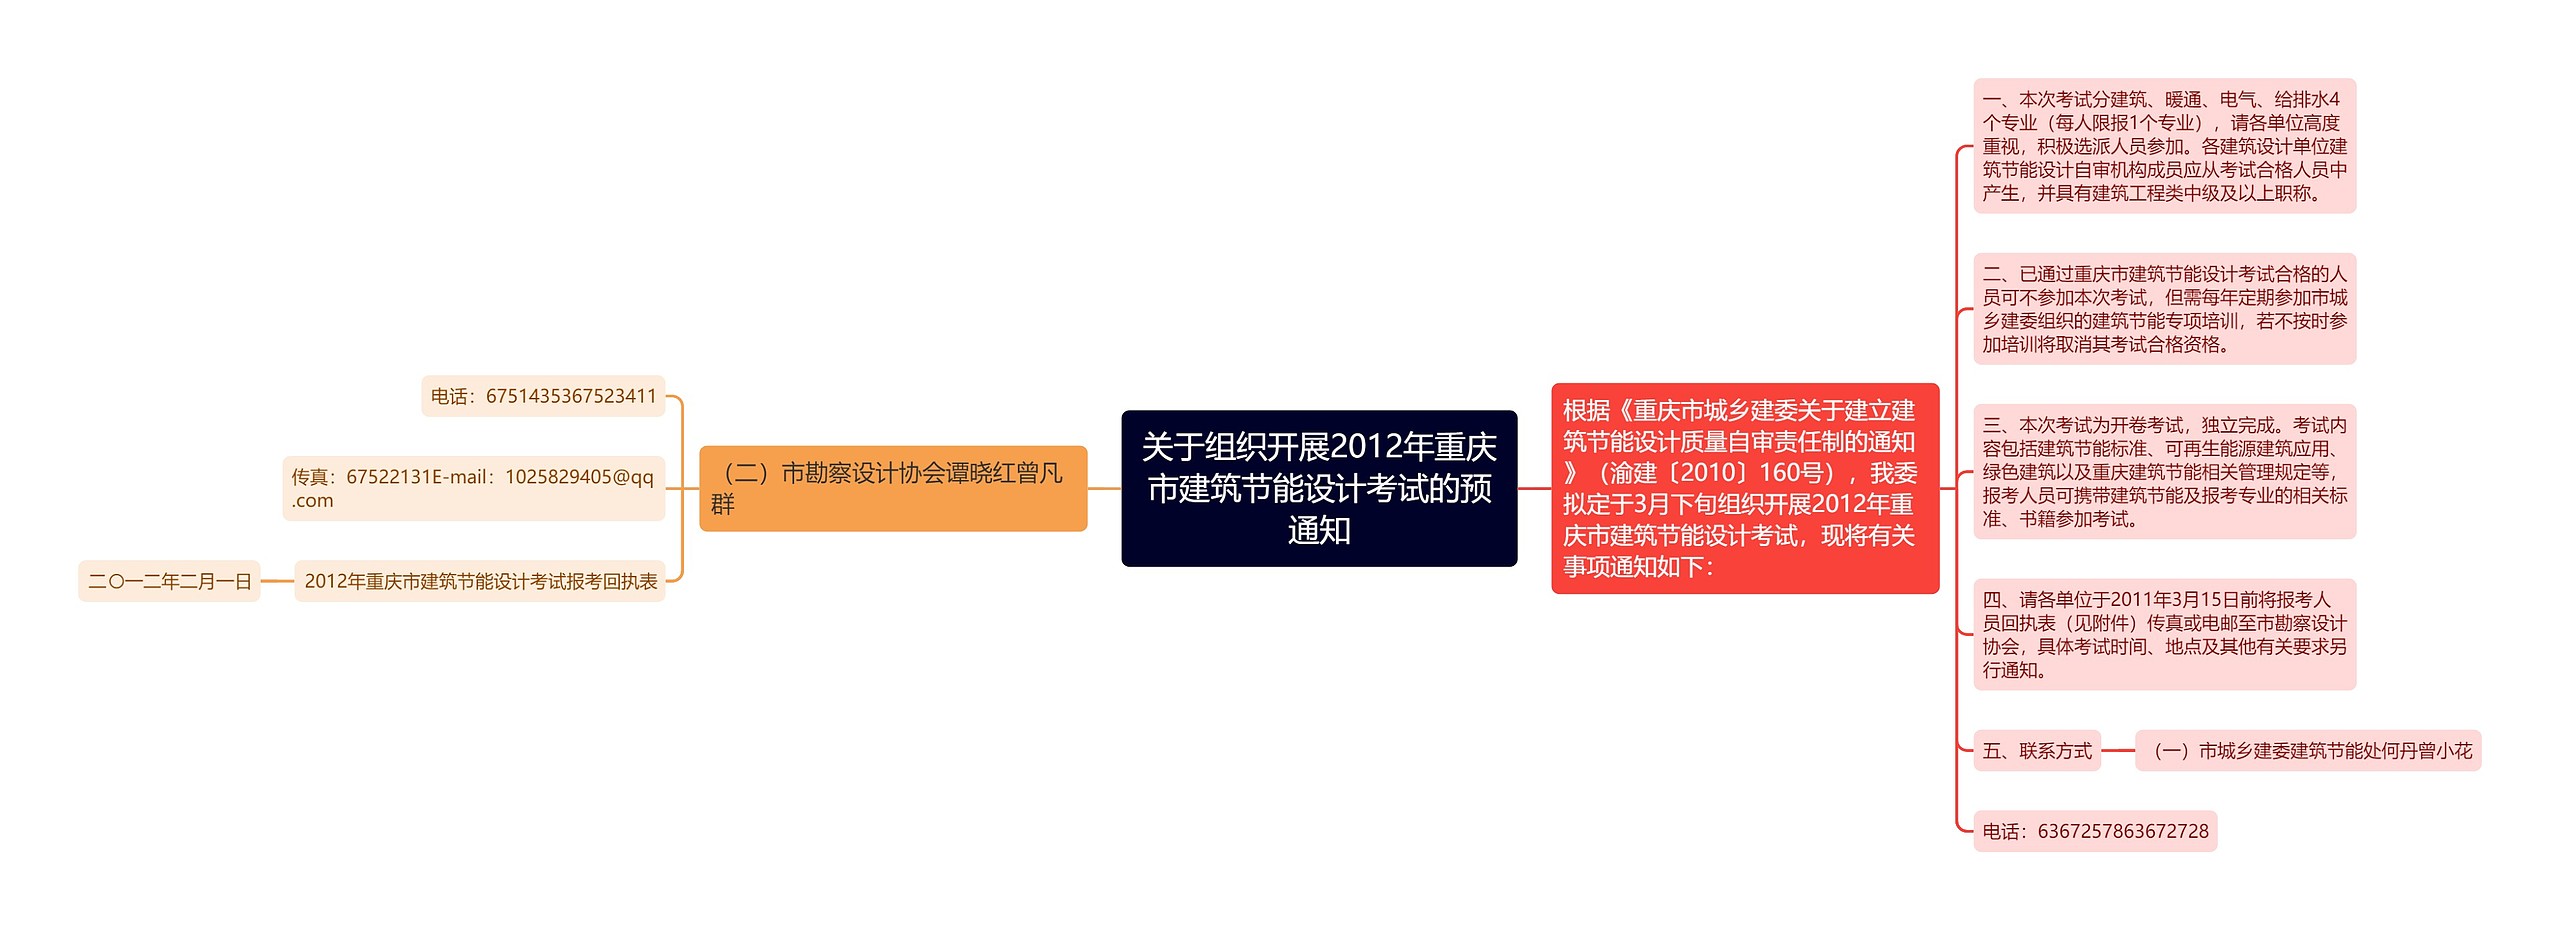 关于组织开展2012年重庆市建筑节能设计考试的预通知